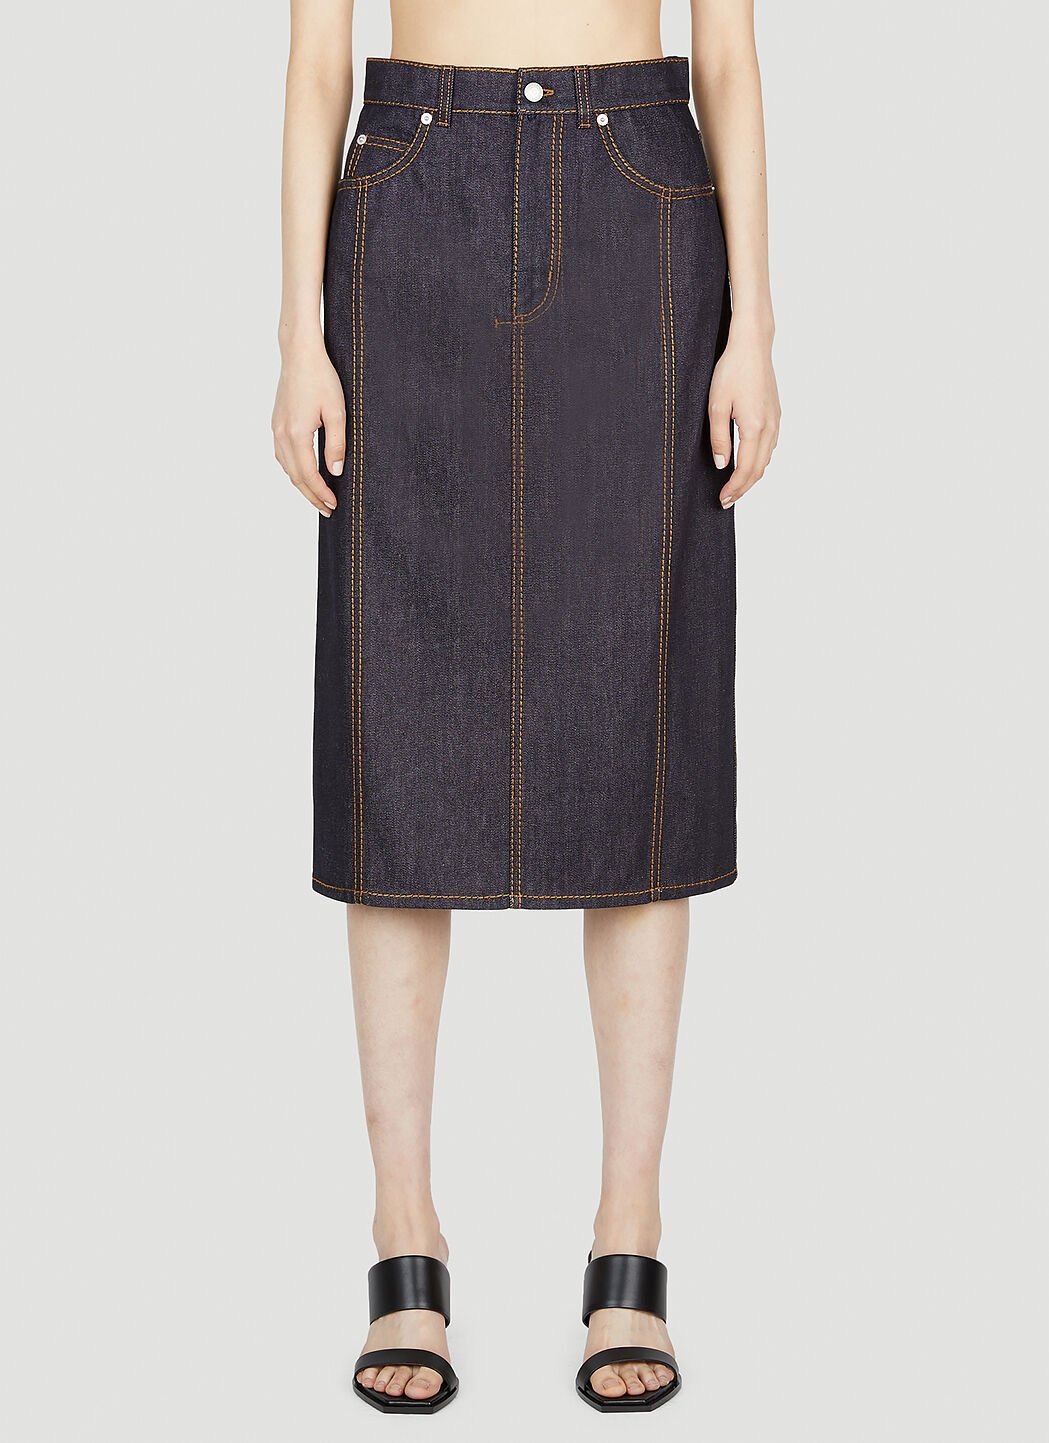 Alexander McQueen Contrast Stitching Denim Skirt Black amq0252012